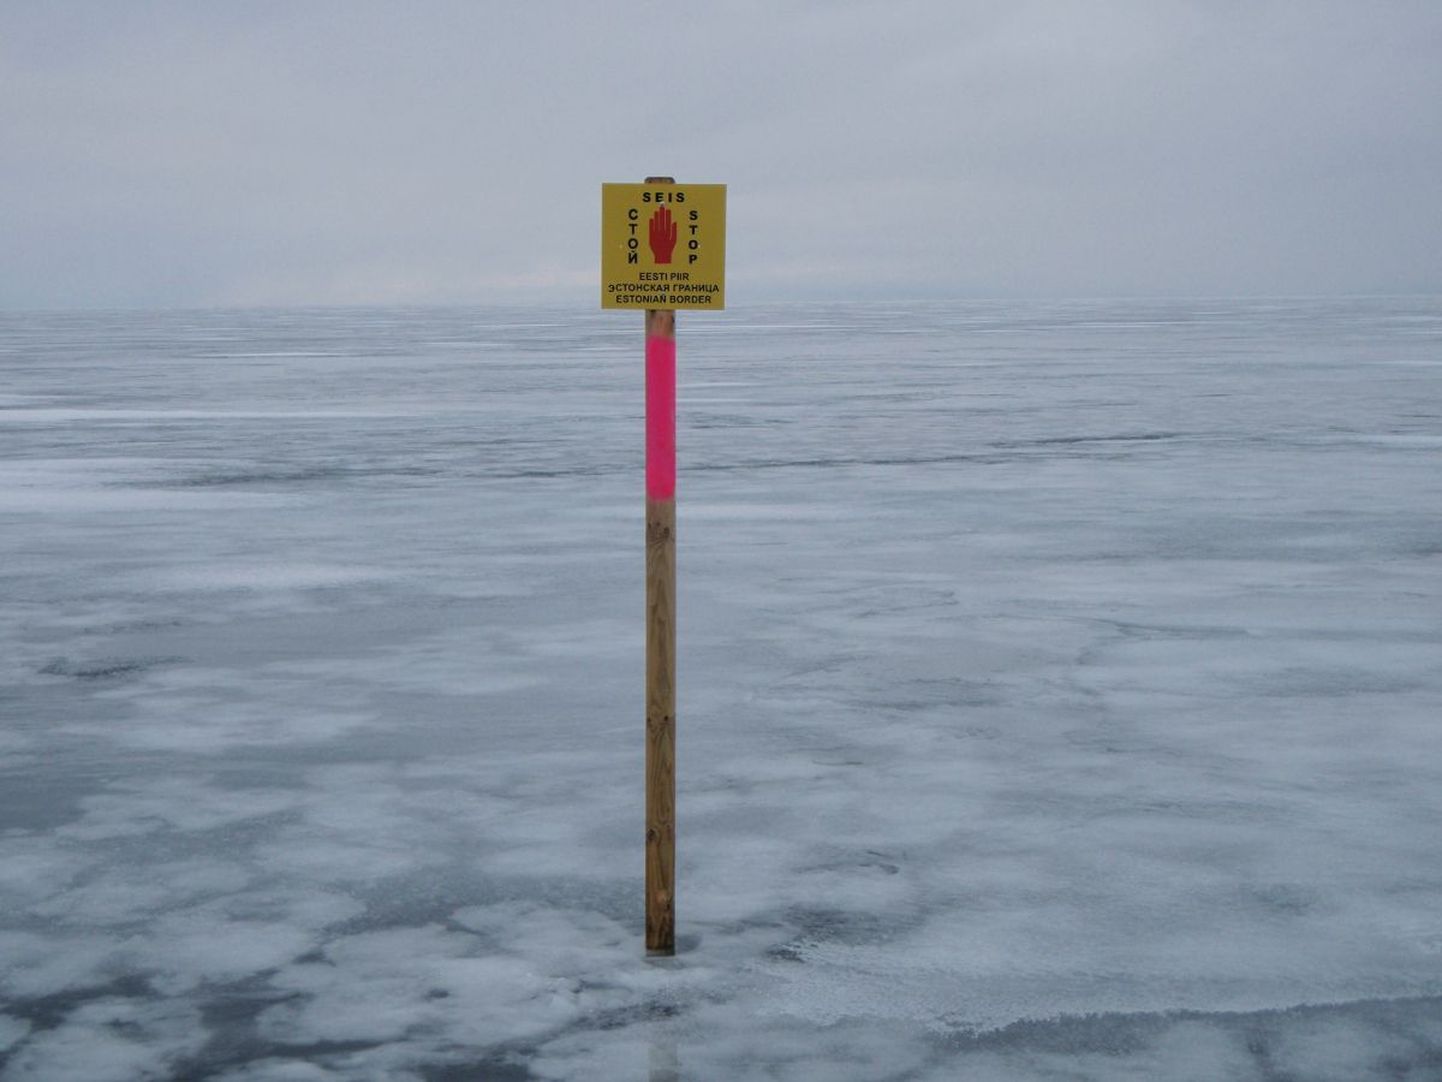 Riigipiiri tähistus Peipsi järvel, millest kaugemale minek on keelatud.